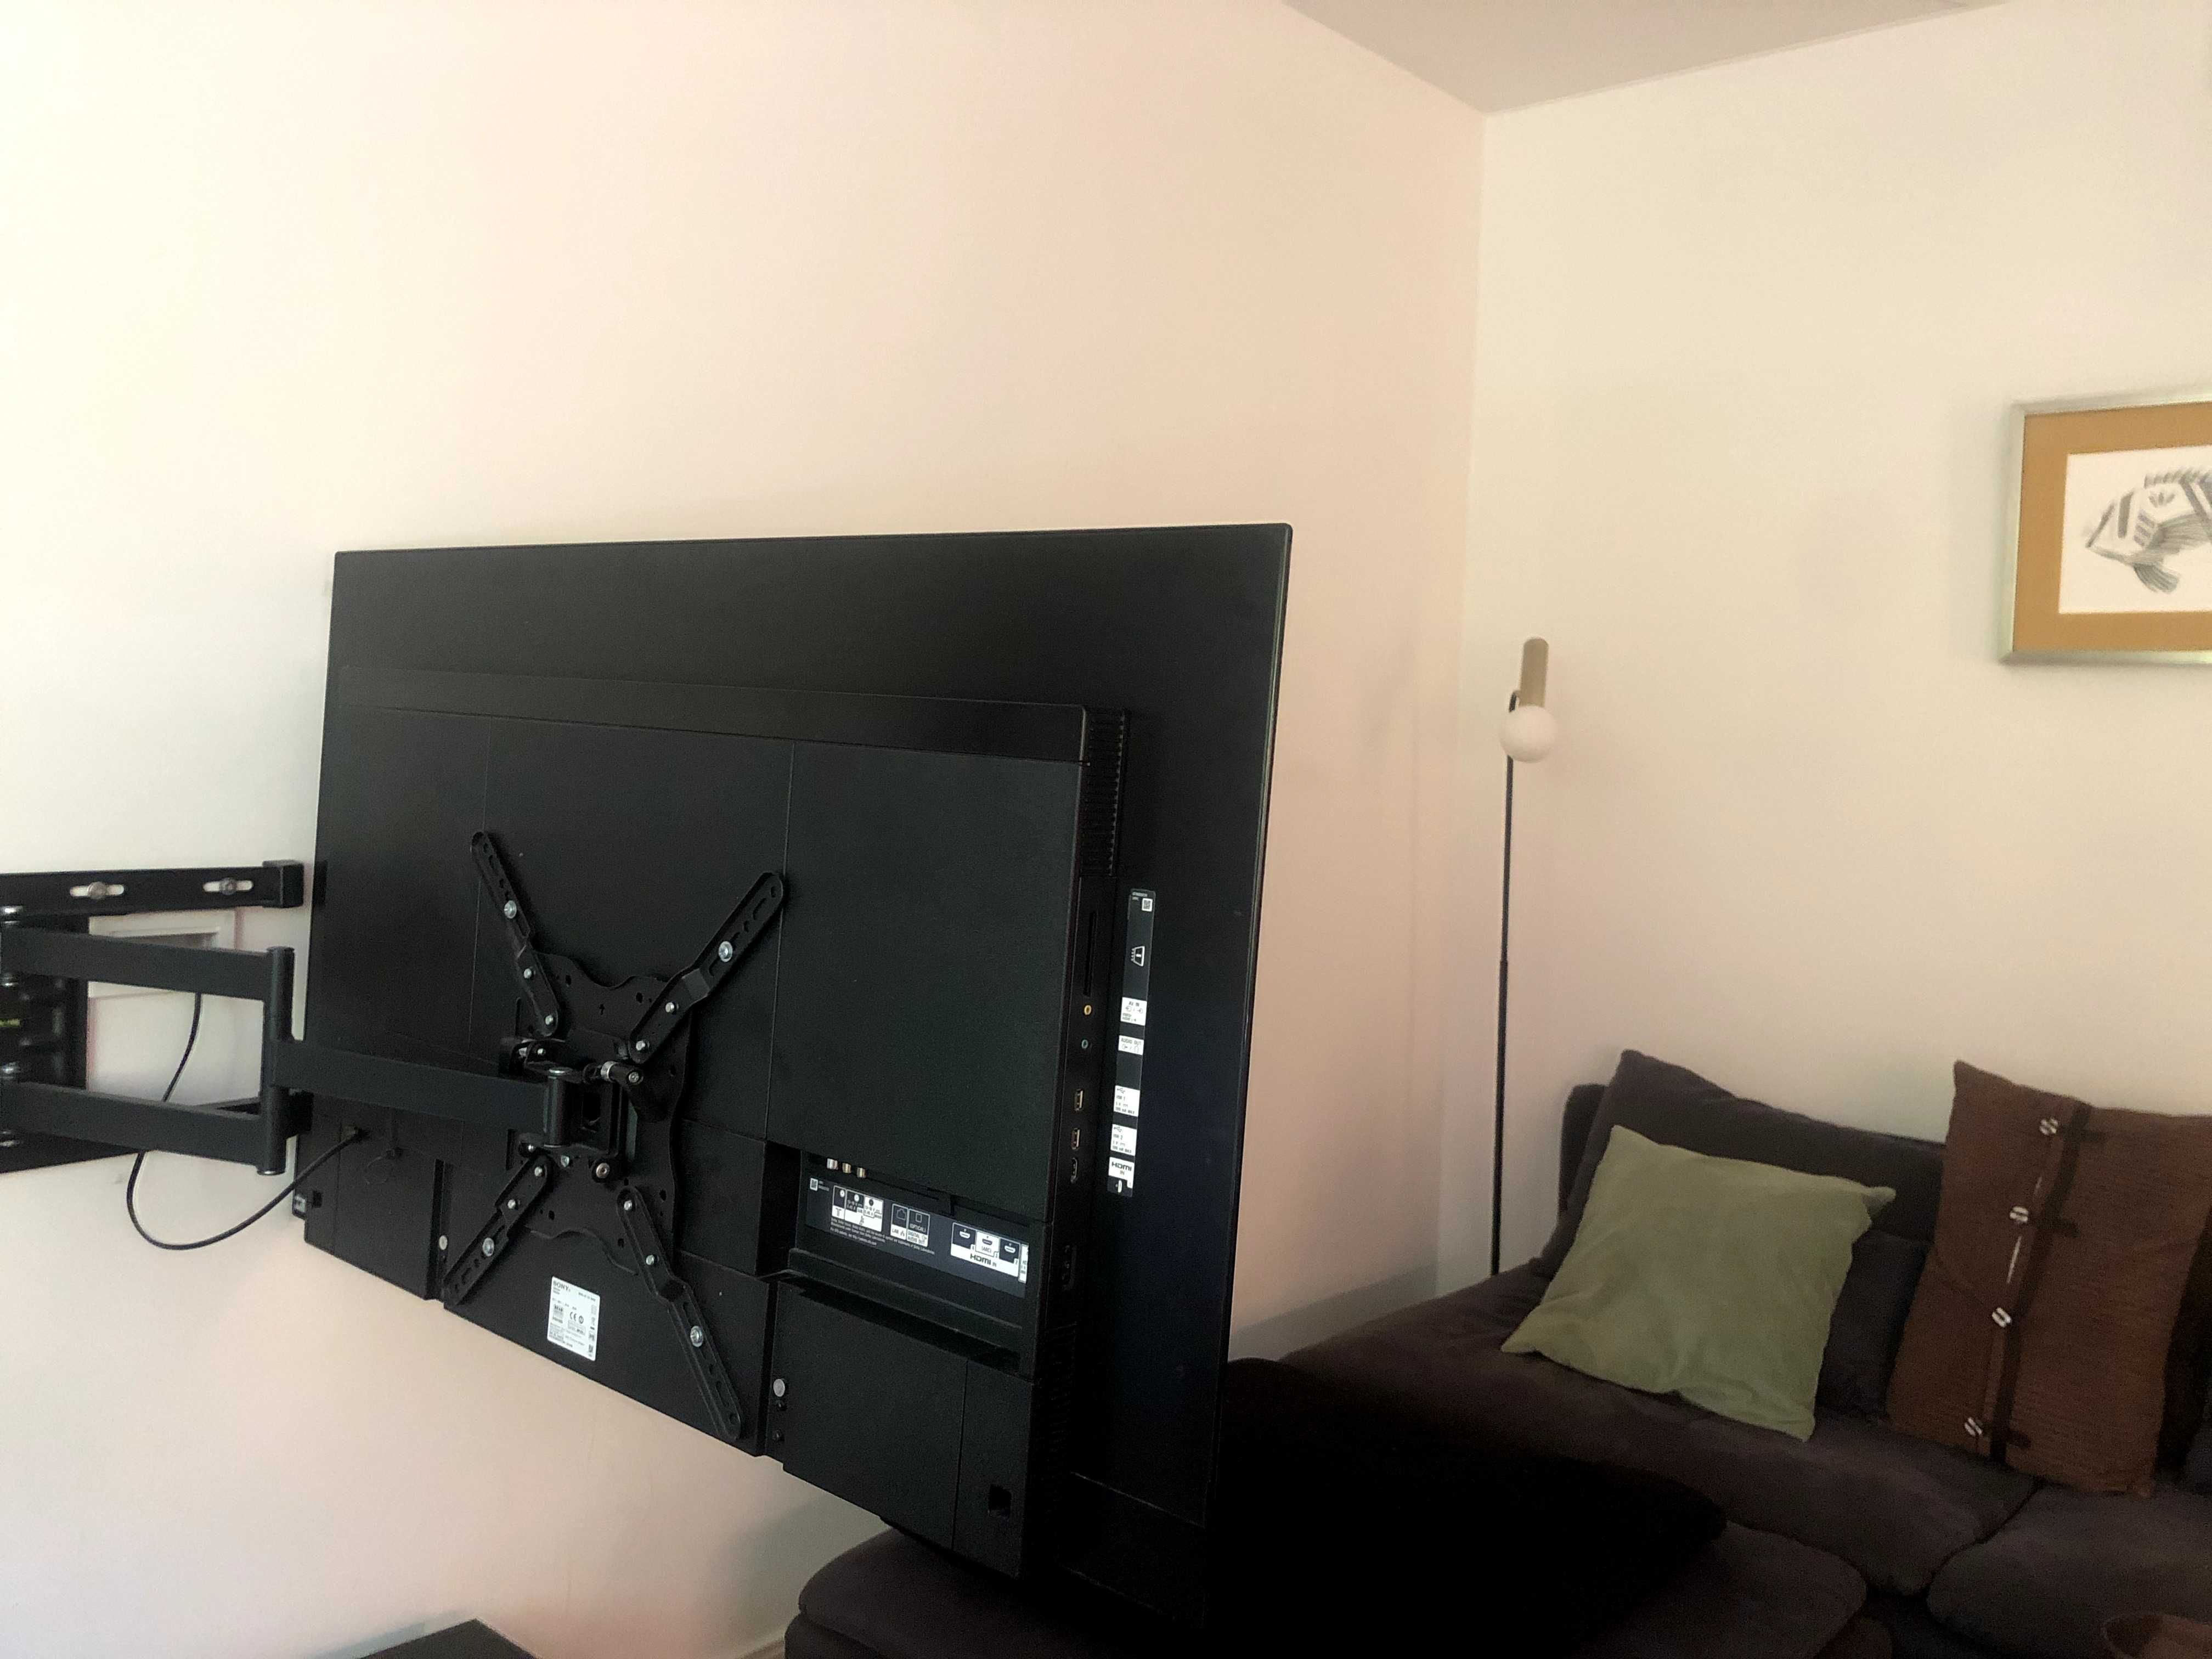 Uchwyt do telewizora SY IWB 6200 nowy, ustawia TV prostopadle do ścian